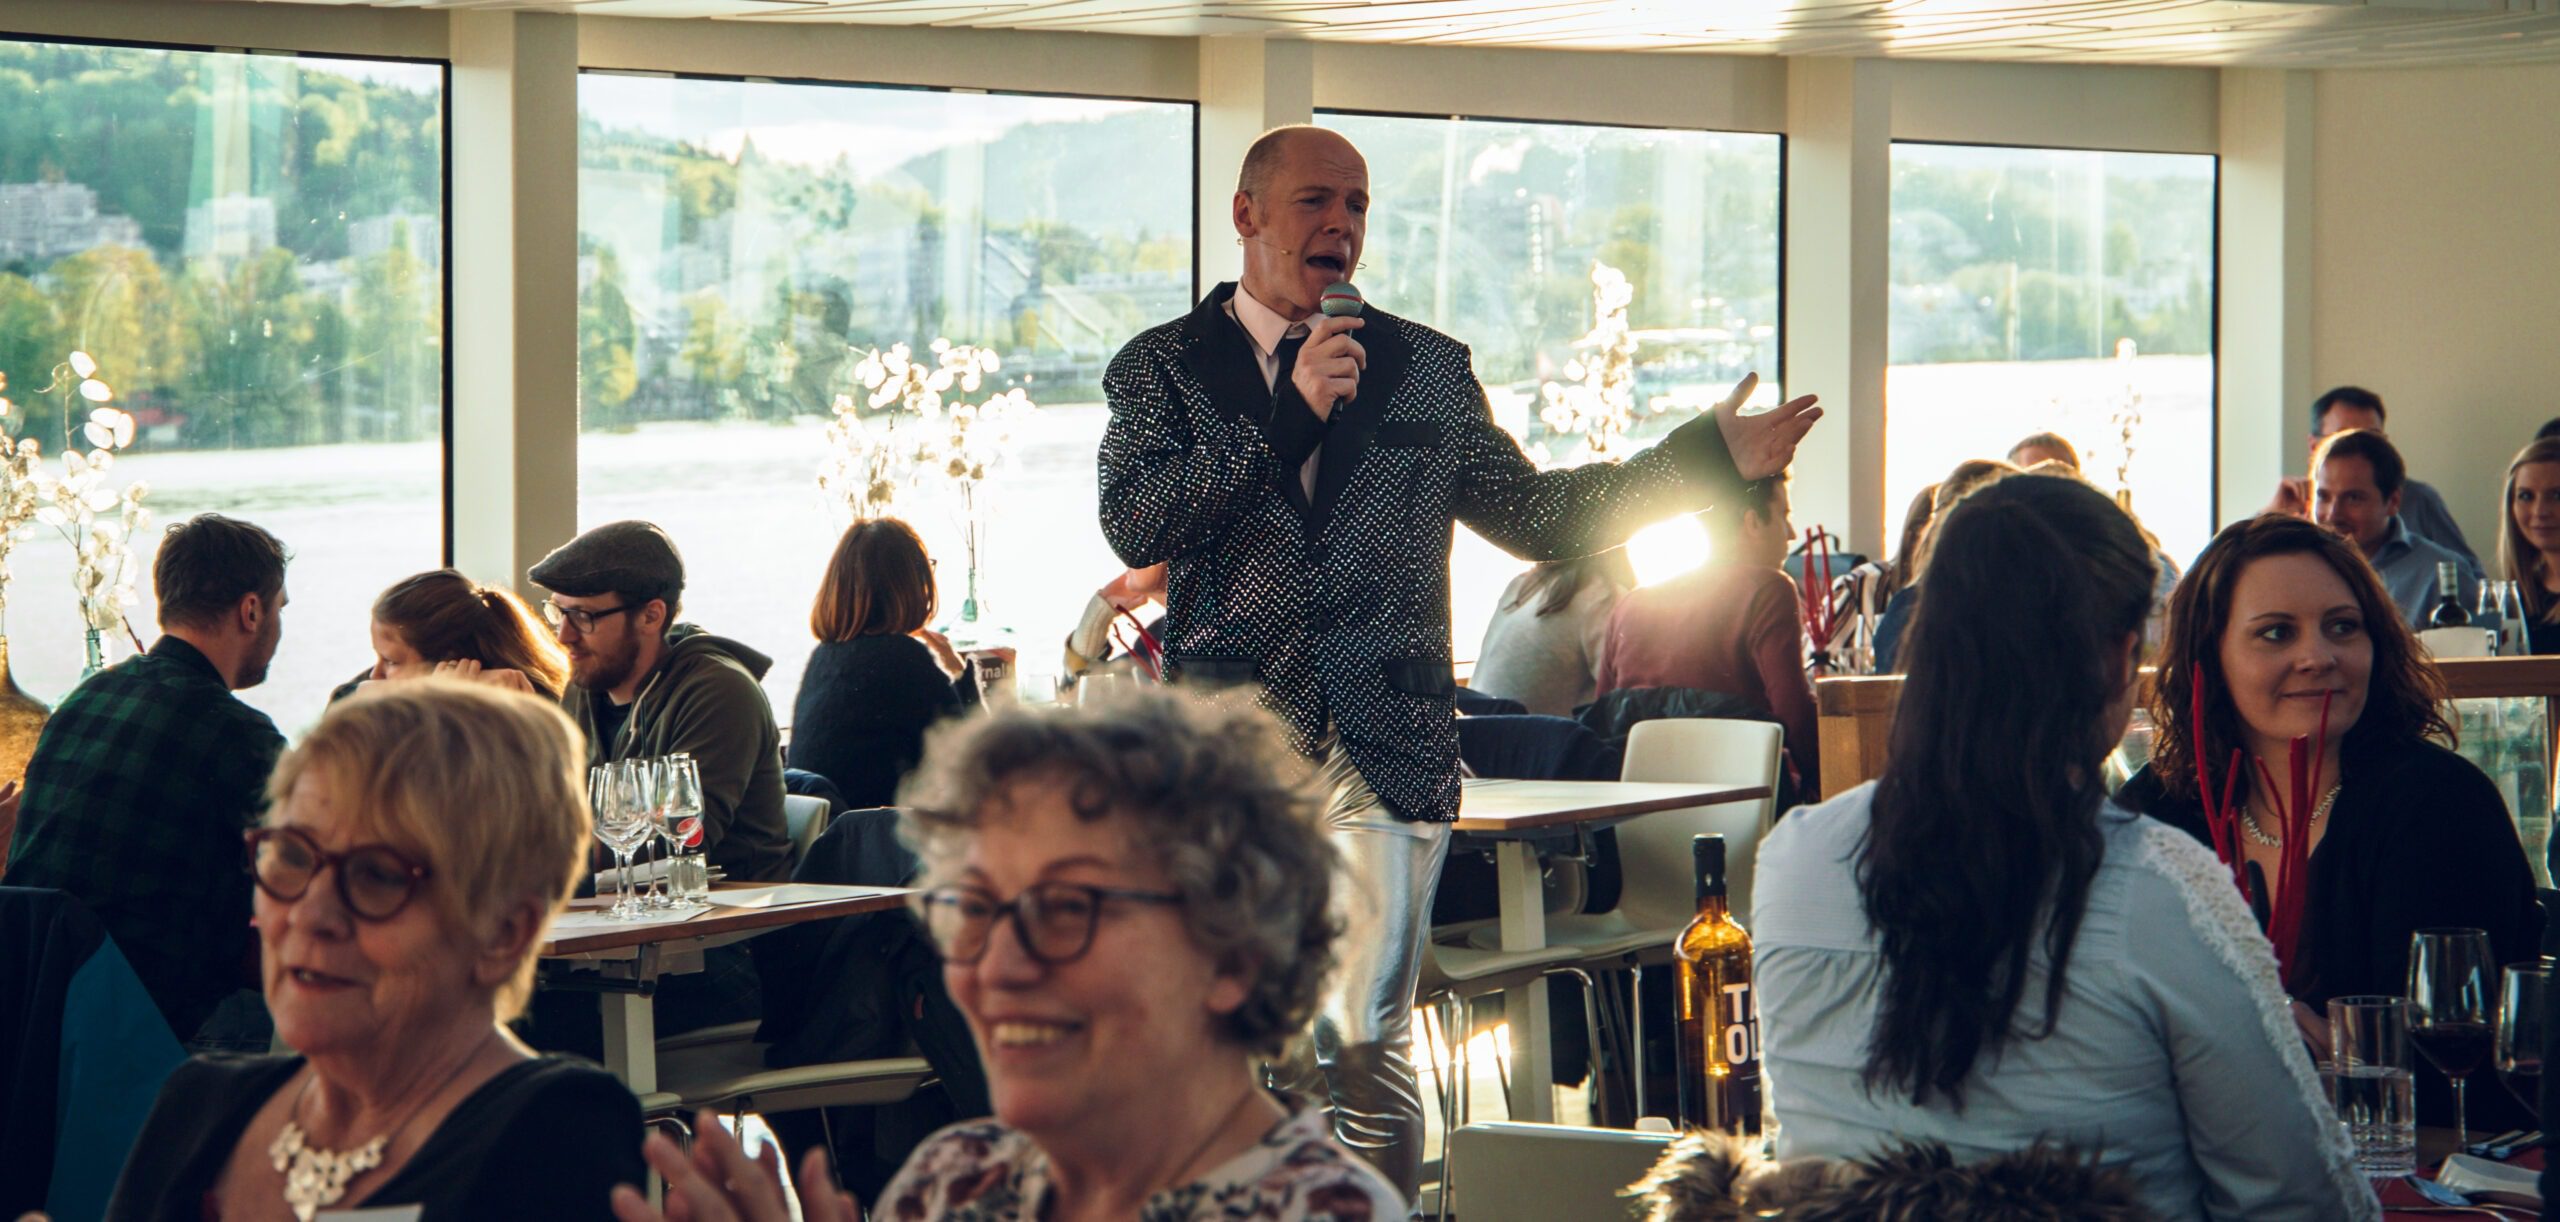 Mann in Anzug singt in einem vollen Restaurant